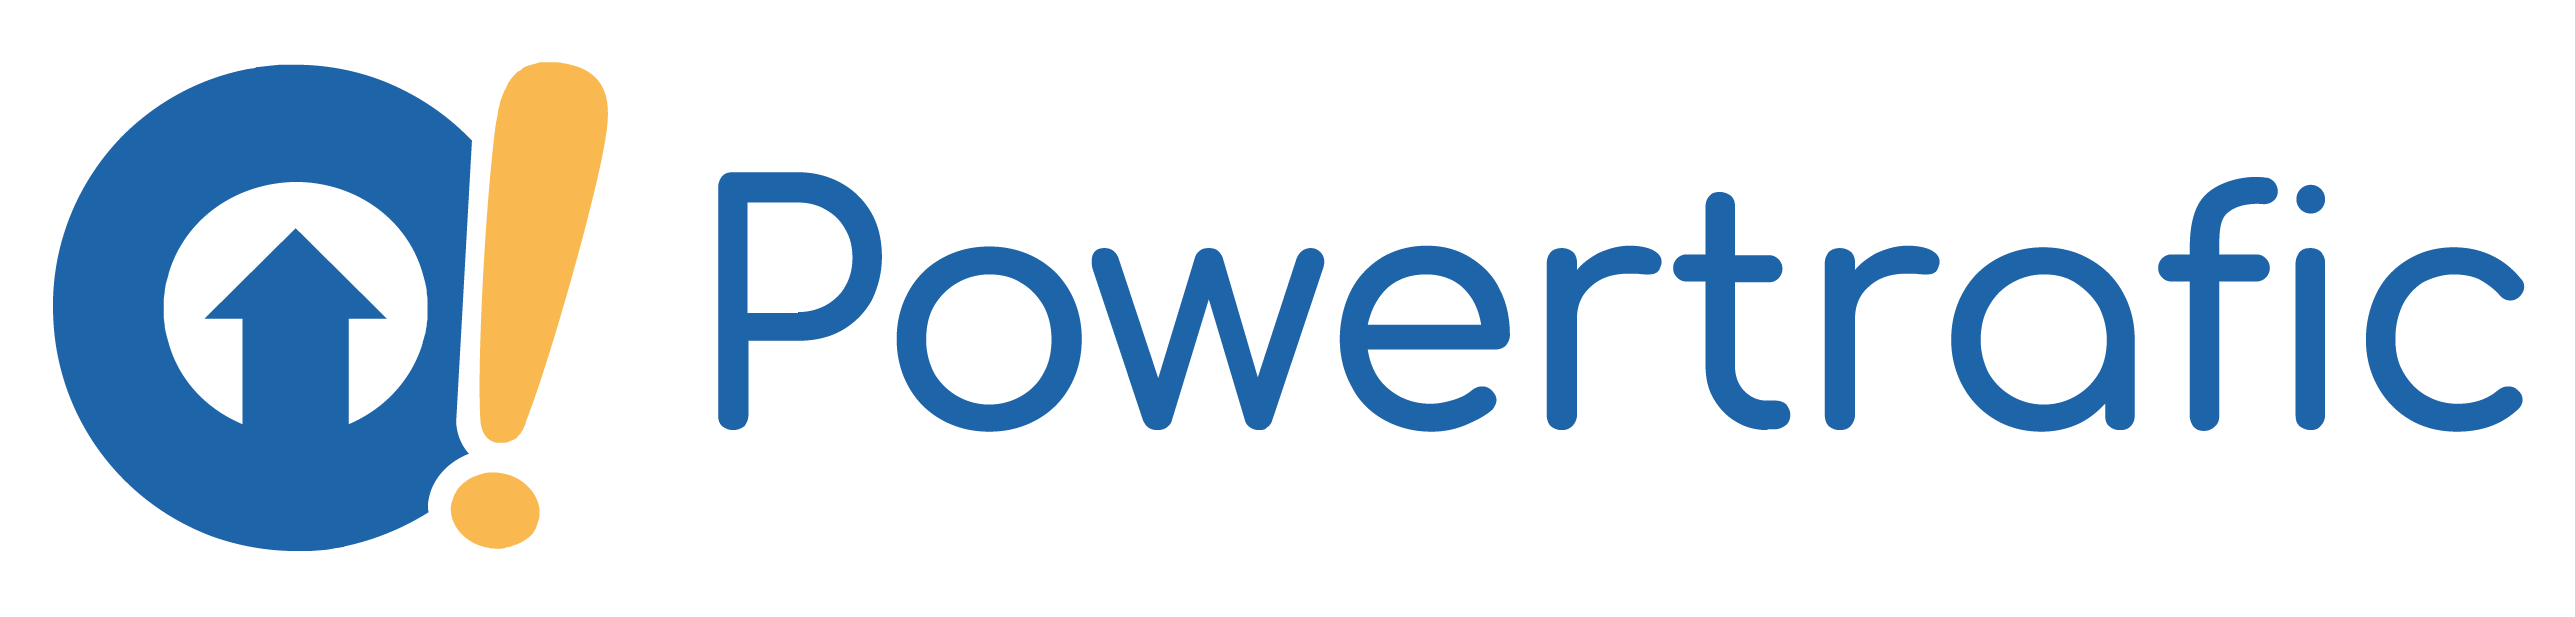 Logo de l'agence web et SEO Powertrafic à Rouen collaborations